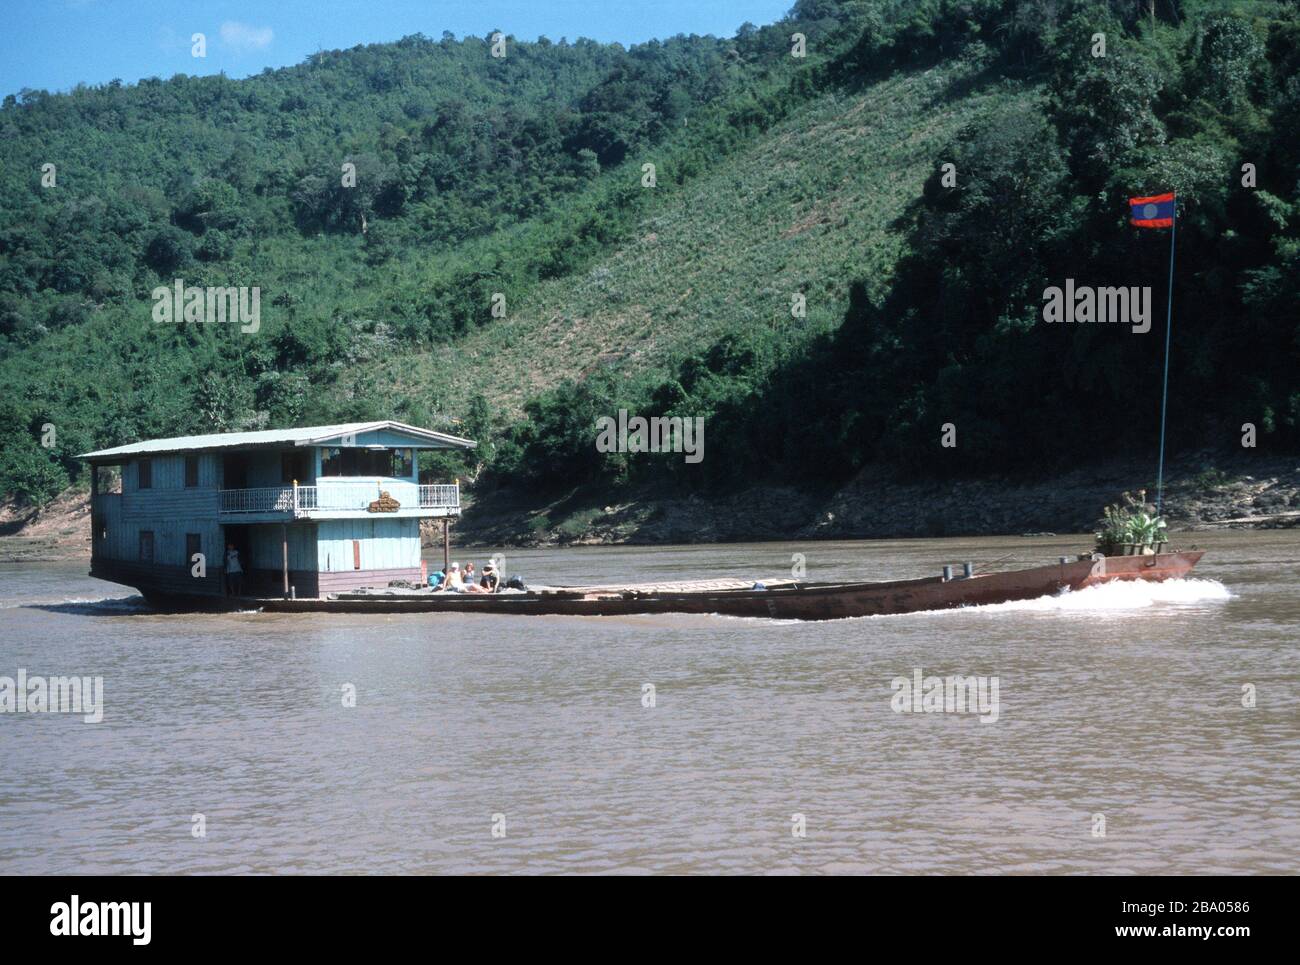 Les touristes voyagent comme passagers de pont sur un bateau lent le long du Mékong au Laos, entre Huay Xai et Luang Prabang. L'équipage vit et travaille dans les quartiers en bois de la poupe sur l'artisanat. À la prow se trouve un drapeau lao et des pots de fleurs roses. Un champ a été éliminé dans la jungle sur la banque derrière. Banque D'Images